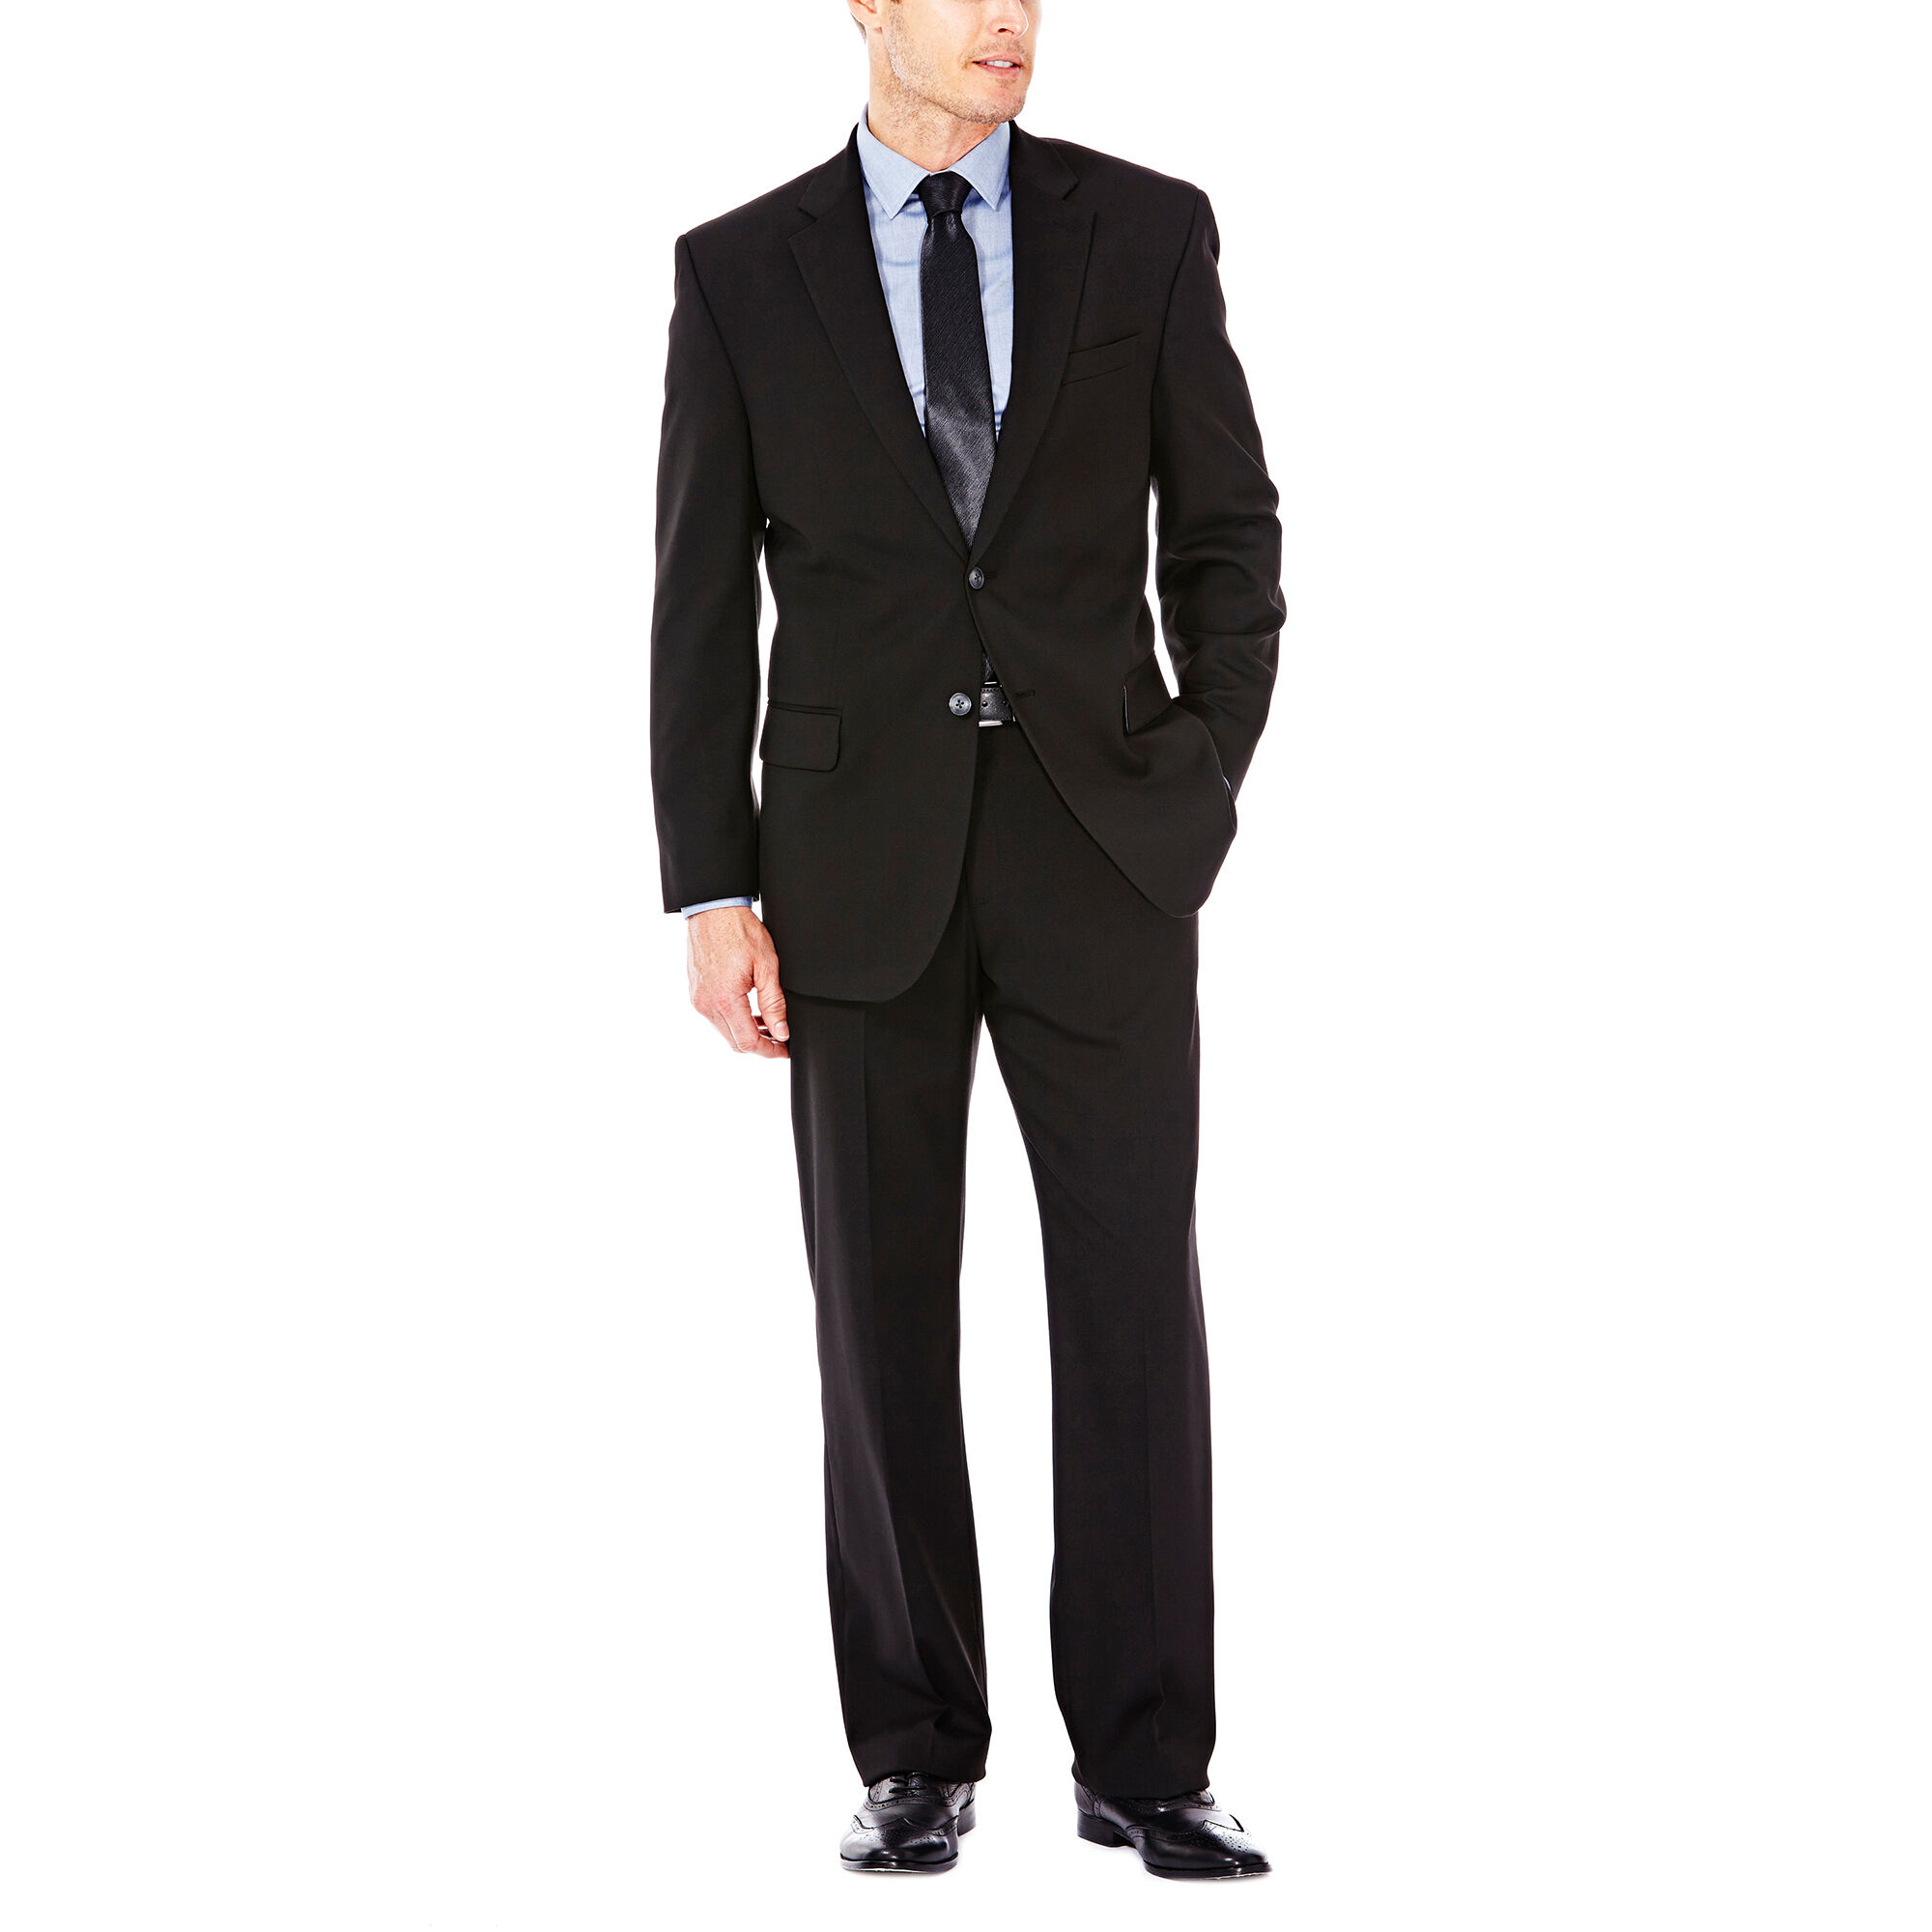 J.M. Haggar Premium Stretch Suit Jacket Black (HZ00182 Clothing Suits) photo